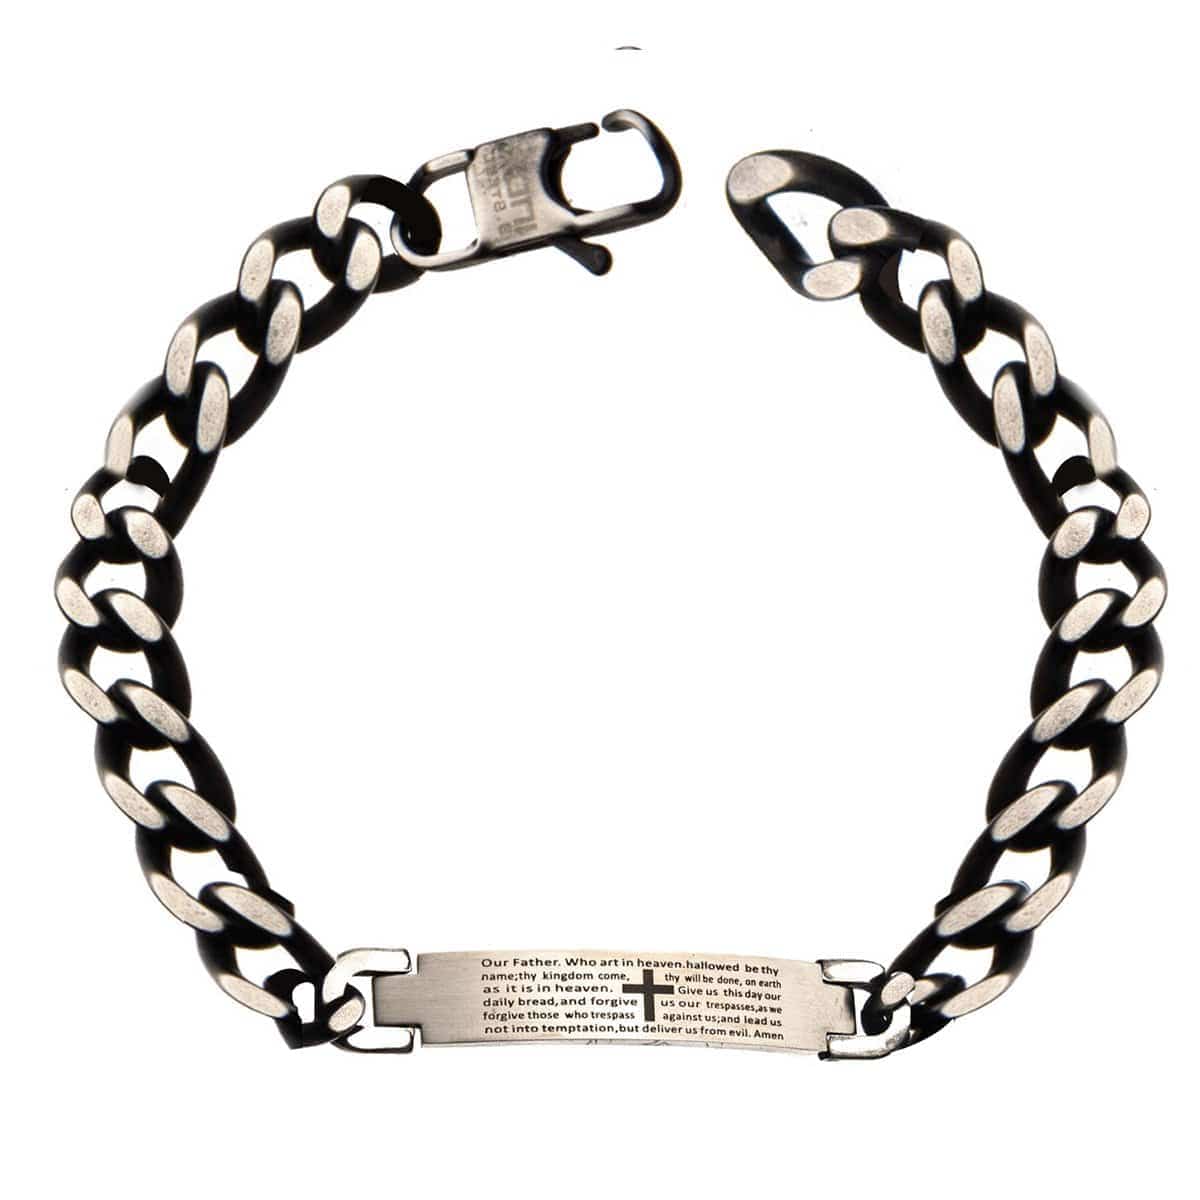 INOX JEWELRY Bracelets Silver Tone Stainless Steel Oxidized Finish Religious Prayer ID Tag Biker Bracelet BR8511GRY